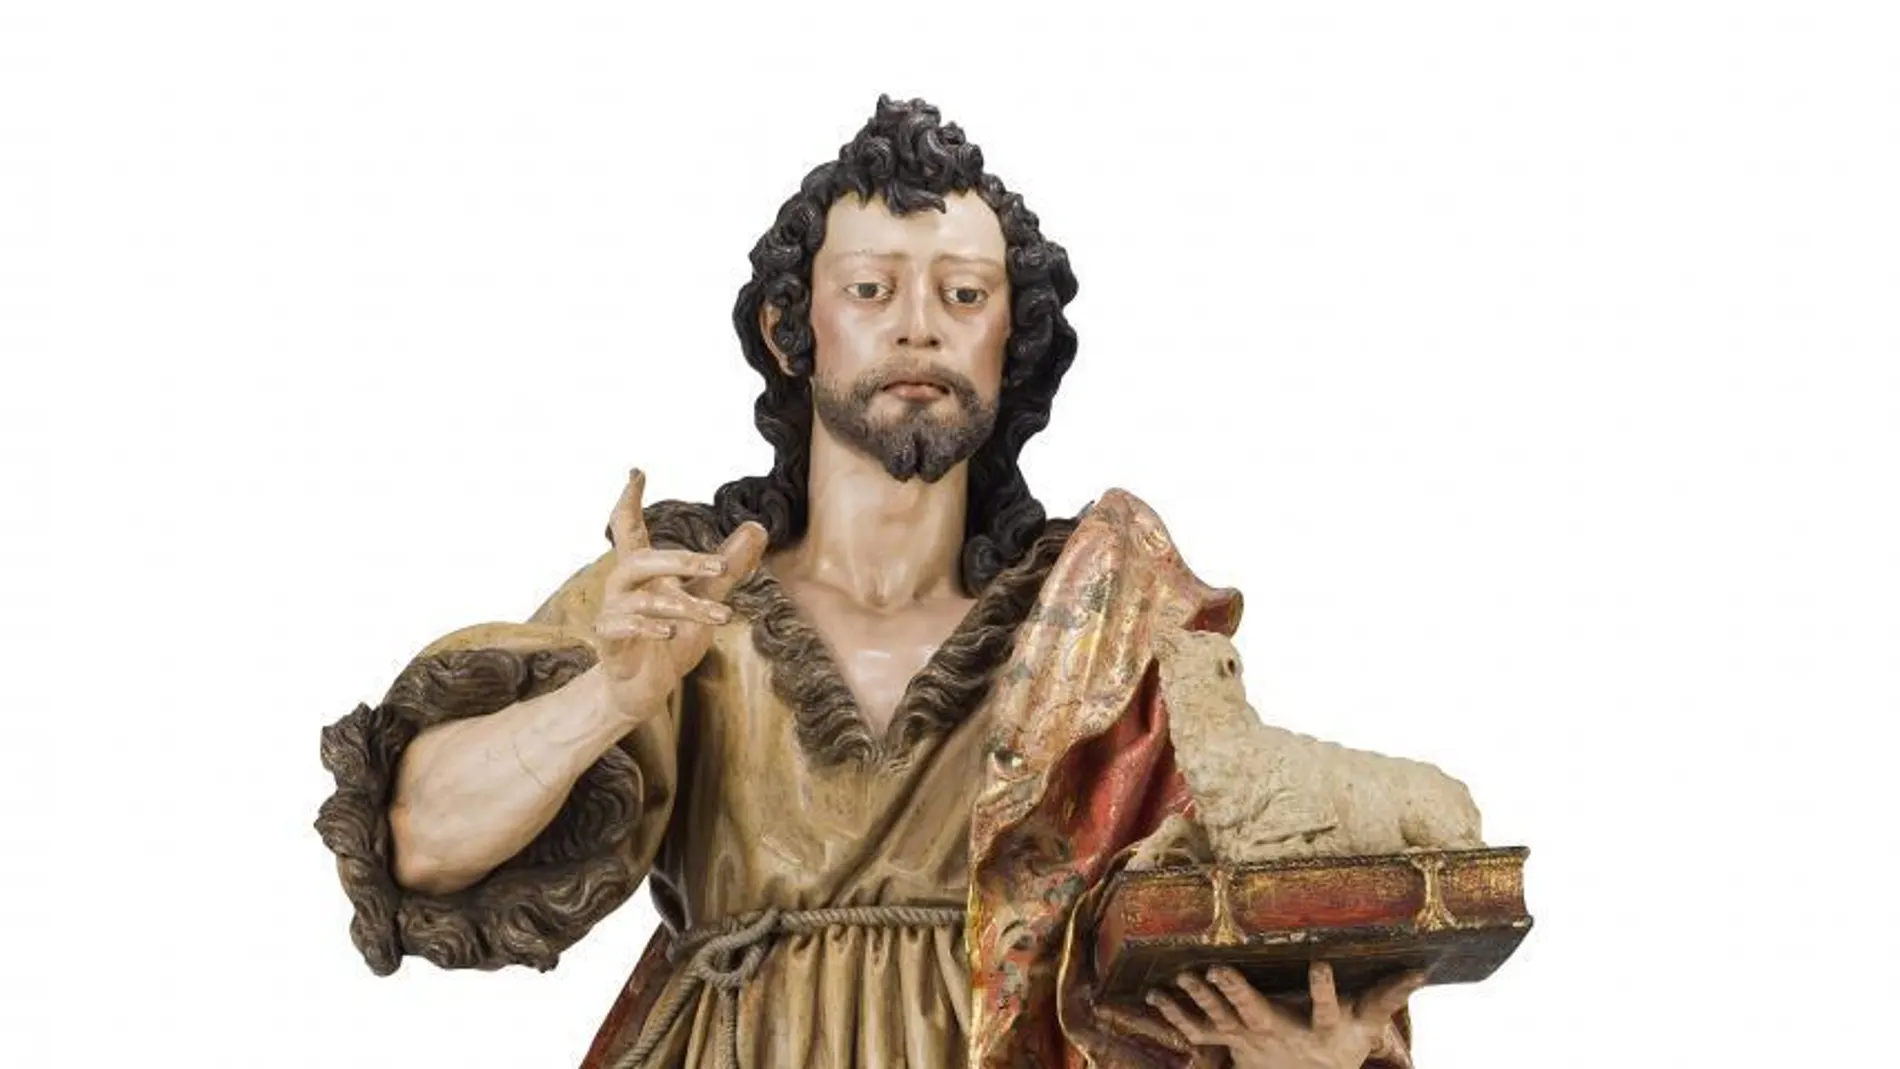 Una escultura de Juan de Mesa que representa a San Juan Bautista se pondrá a la venta el próximo marzo en una casa de subastas de Sevilla .EFE/Isbilya Subastas